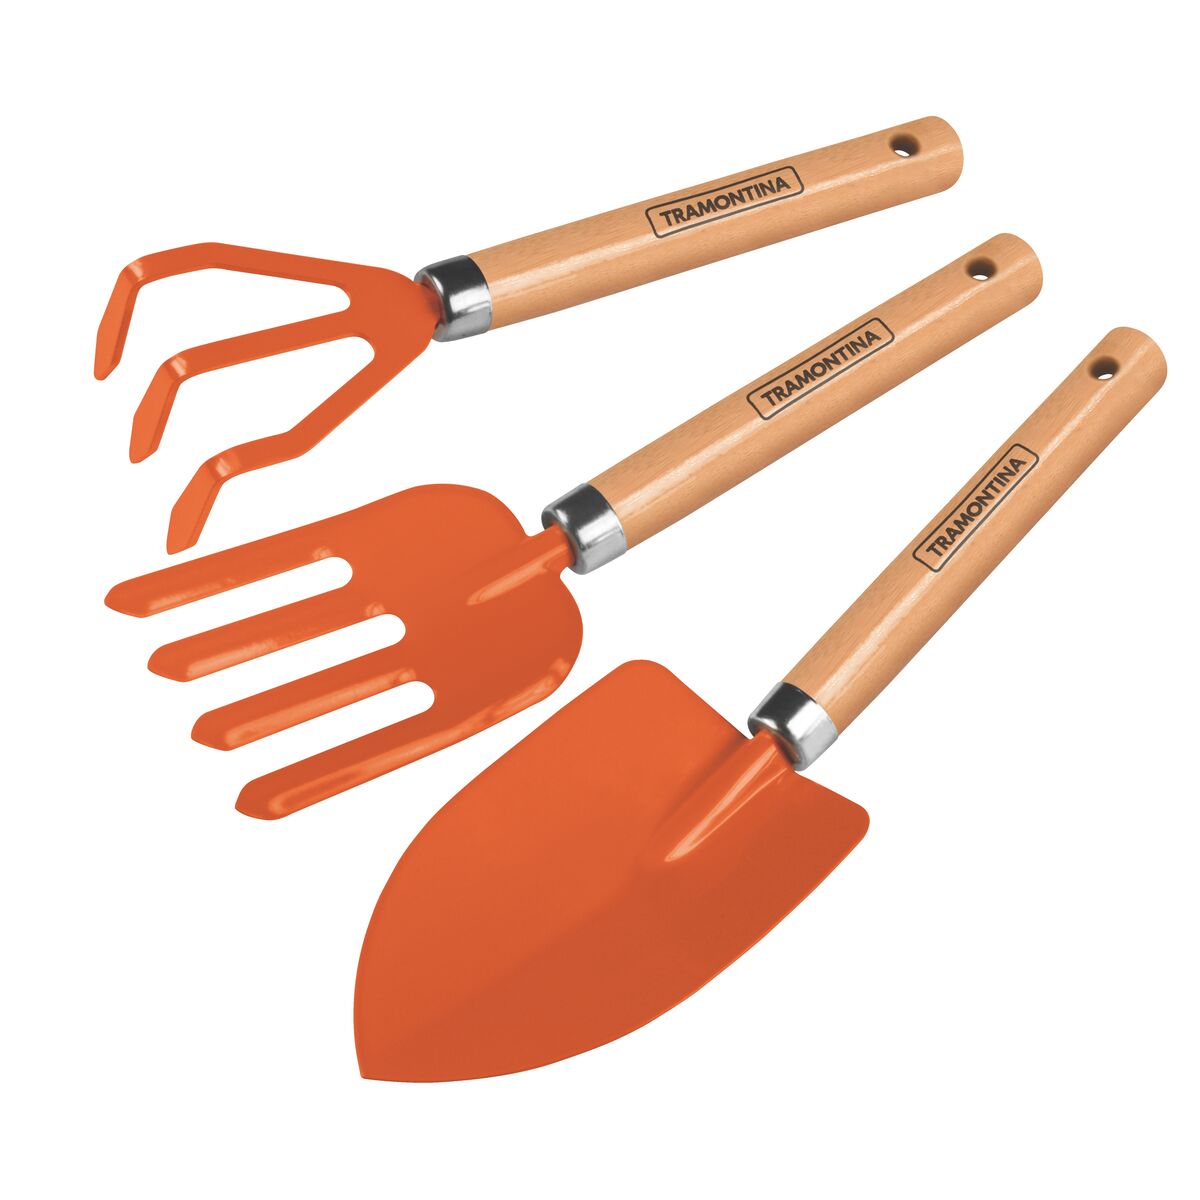 3 pieces garden tool set, wood handles, plastic package